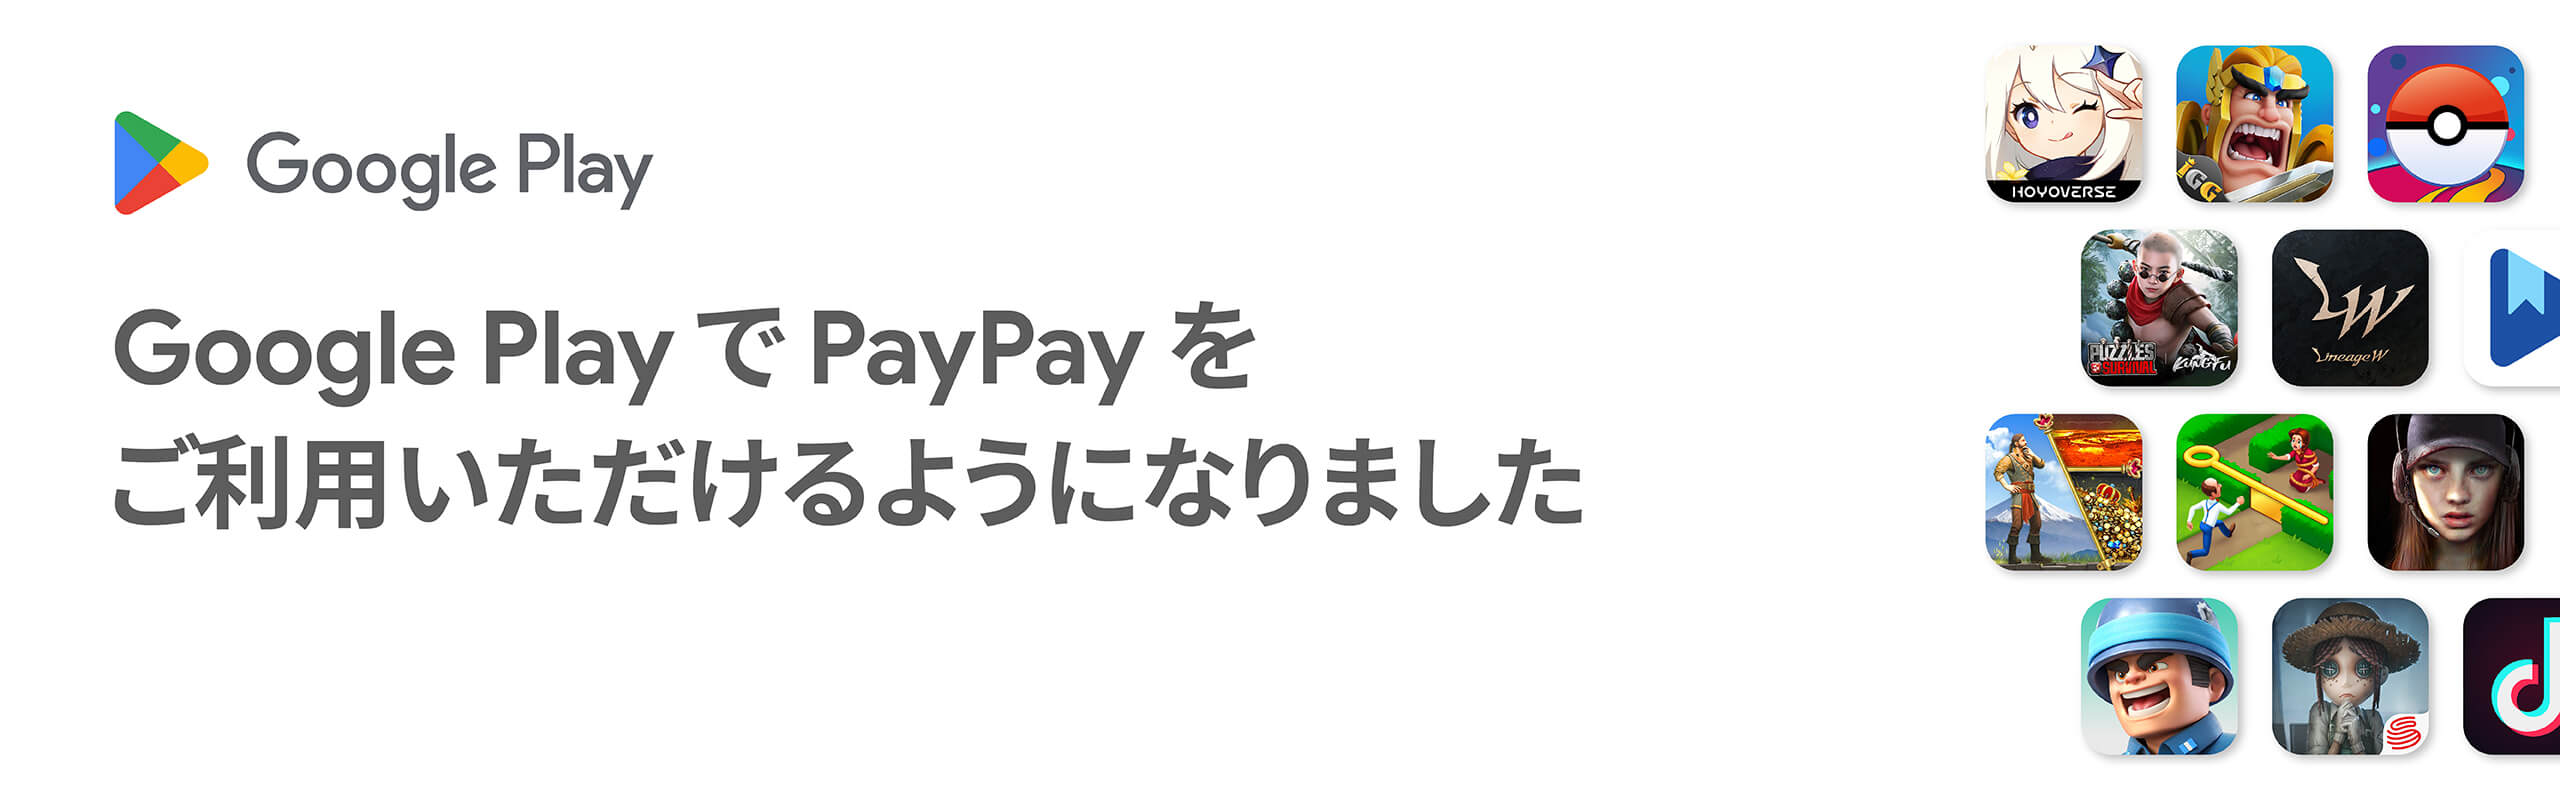 Google PlayでPayPayをご利用いただけるようになりました